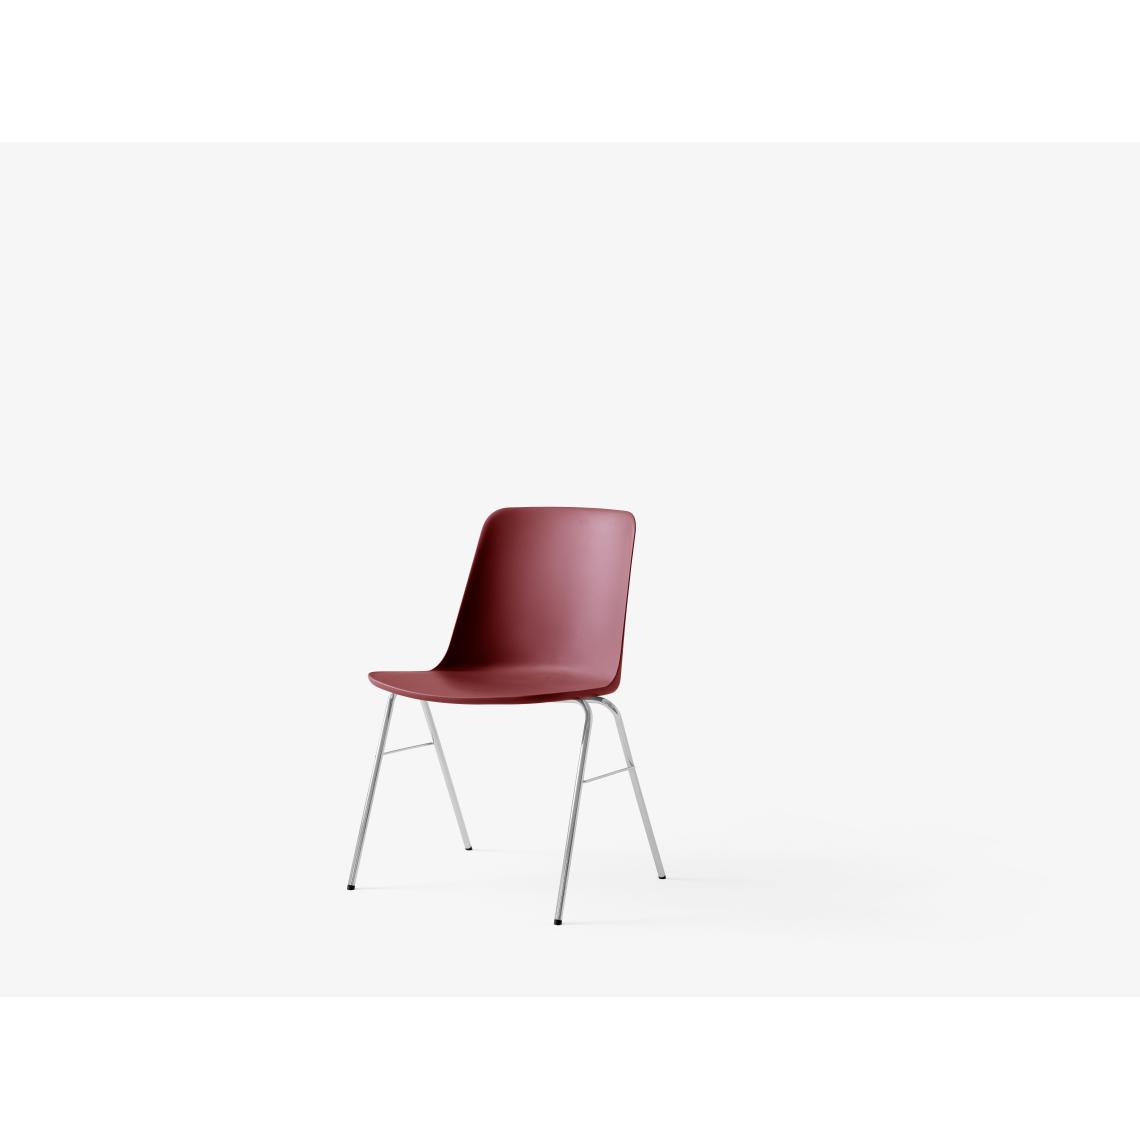 Andtradition - Chaise HW 26 - rouge/marron - chromé - Chaises